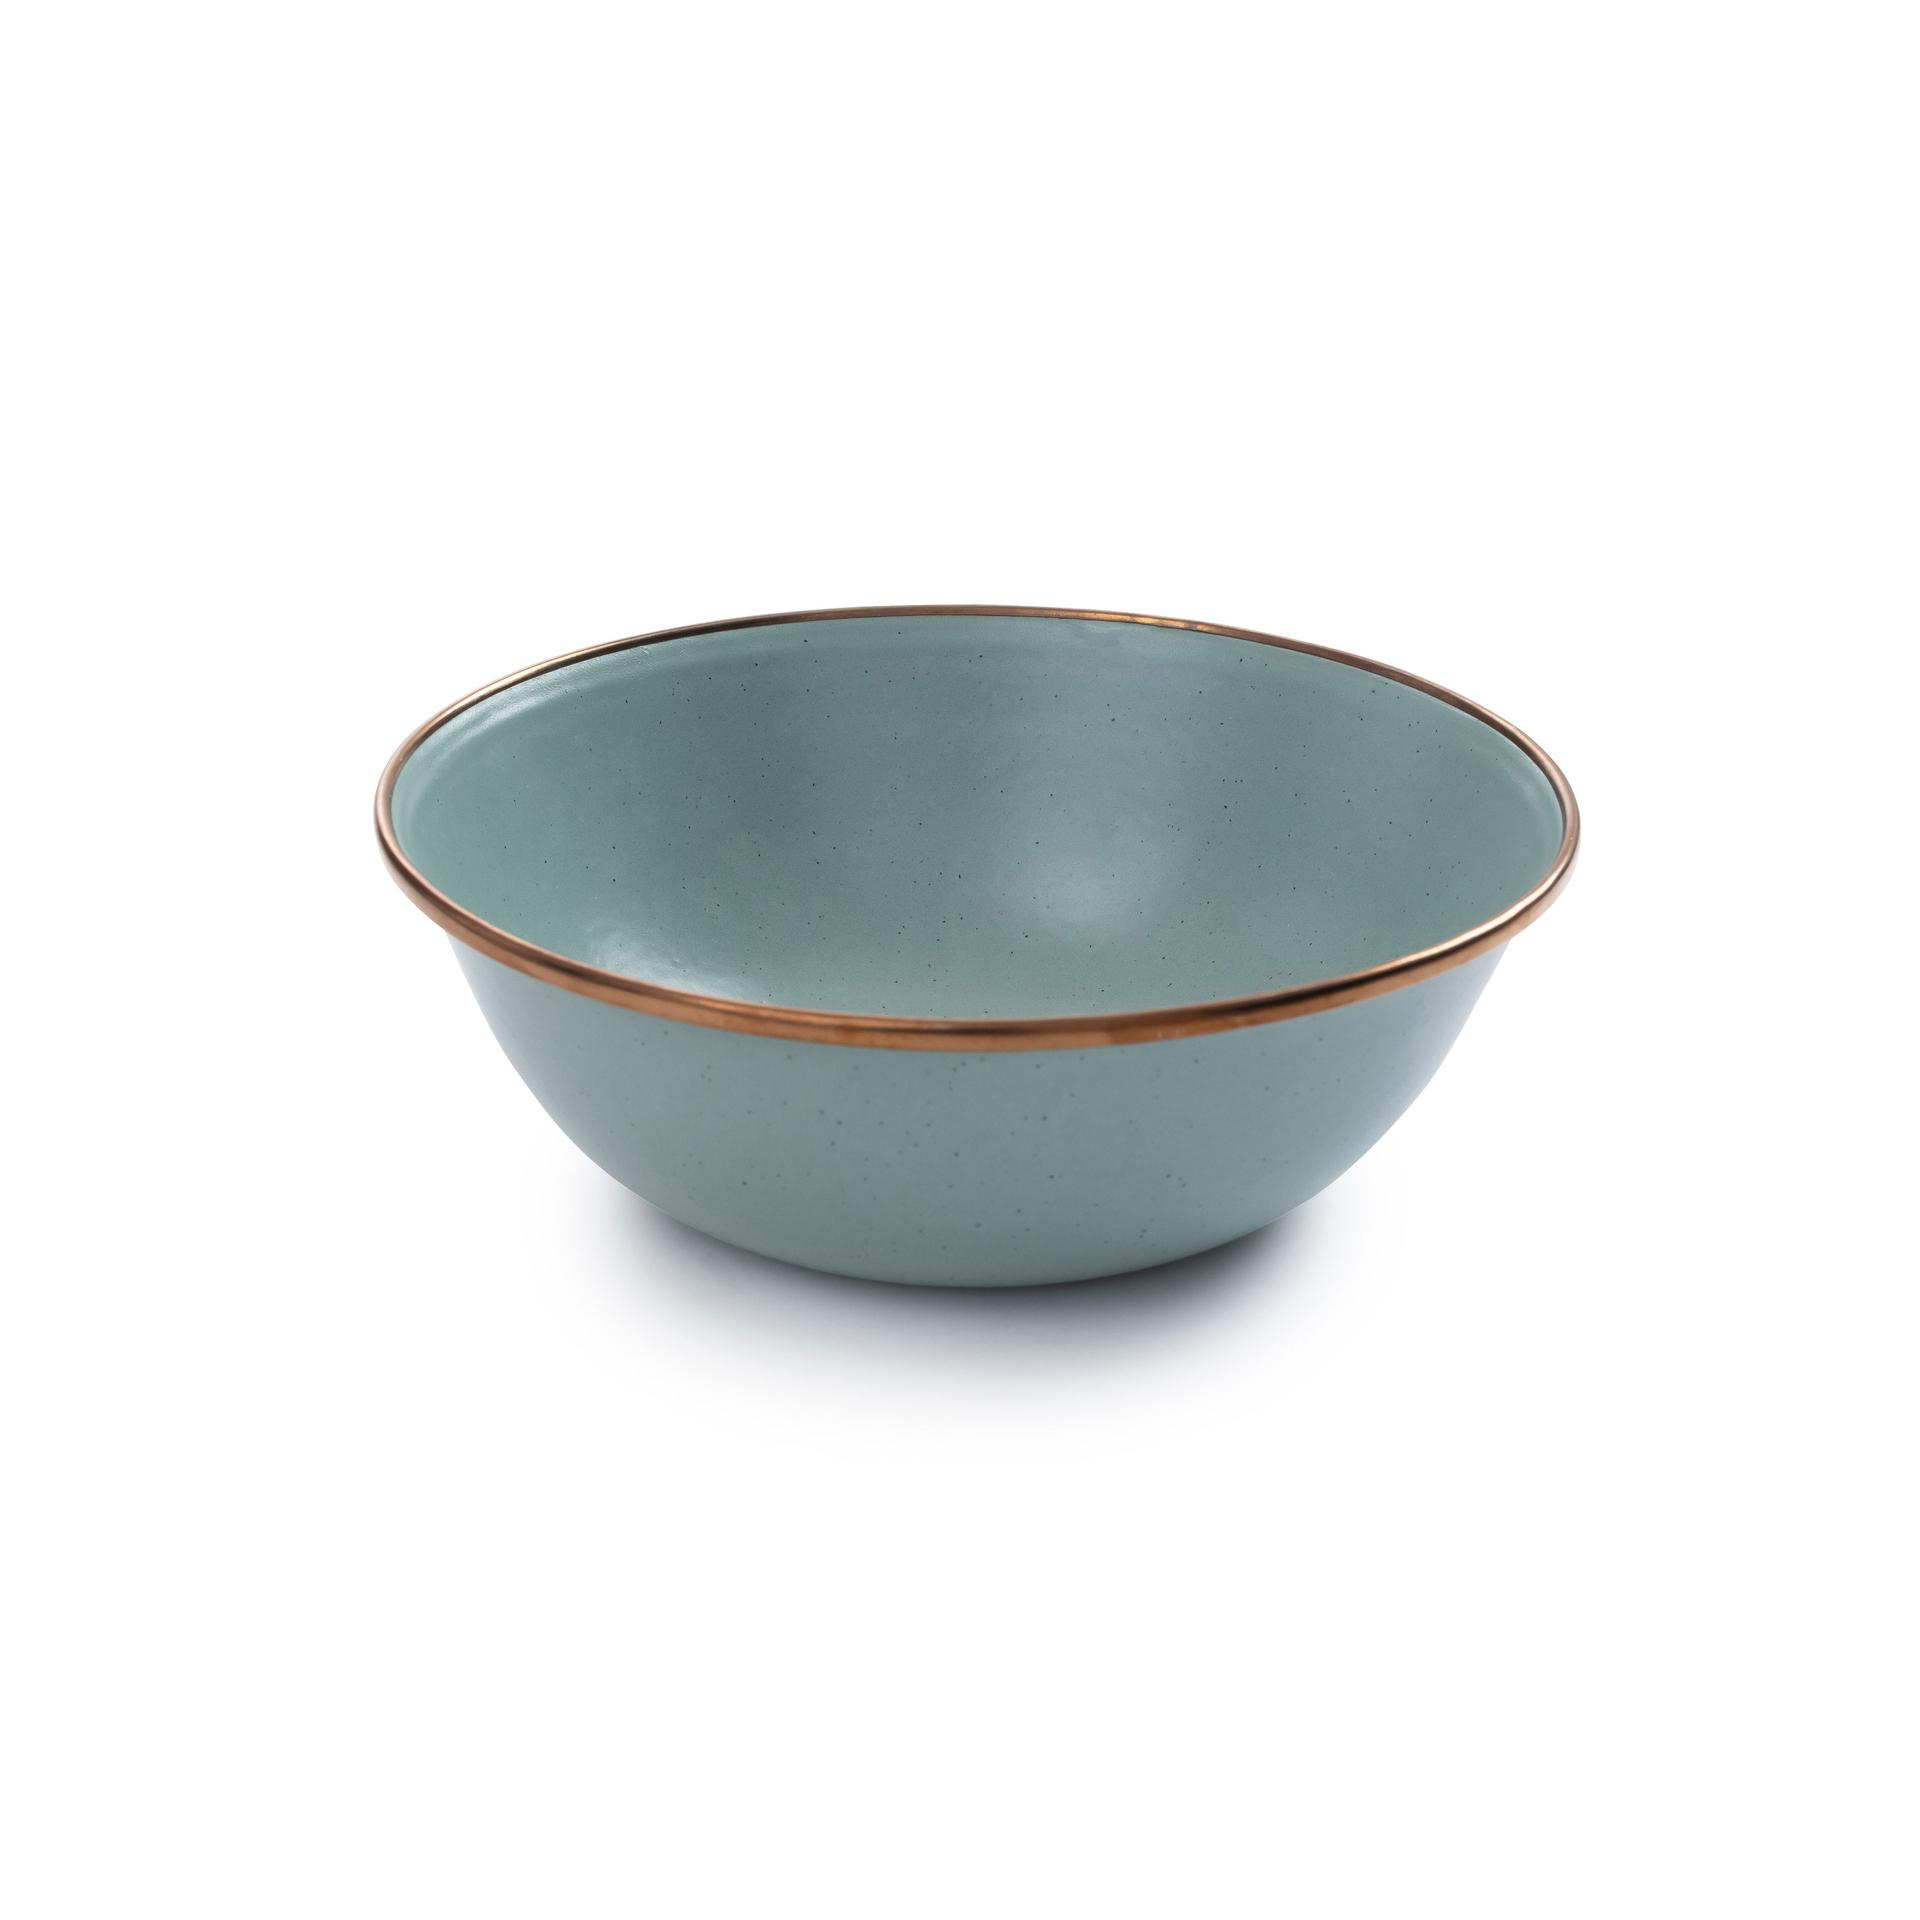 BAREBONES Enamel Bowl 搪瓷碗 - 2 件套